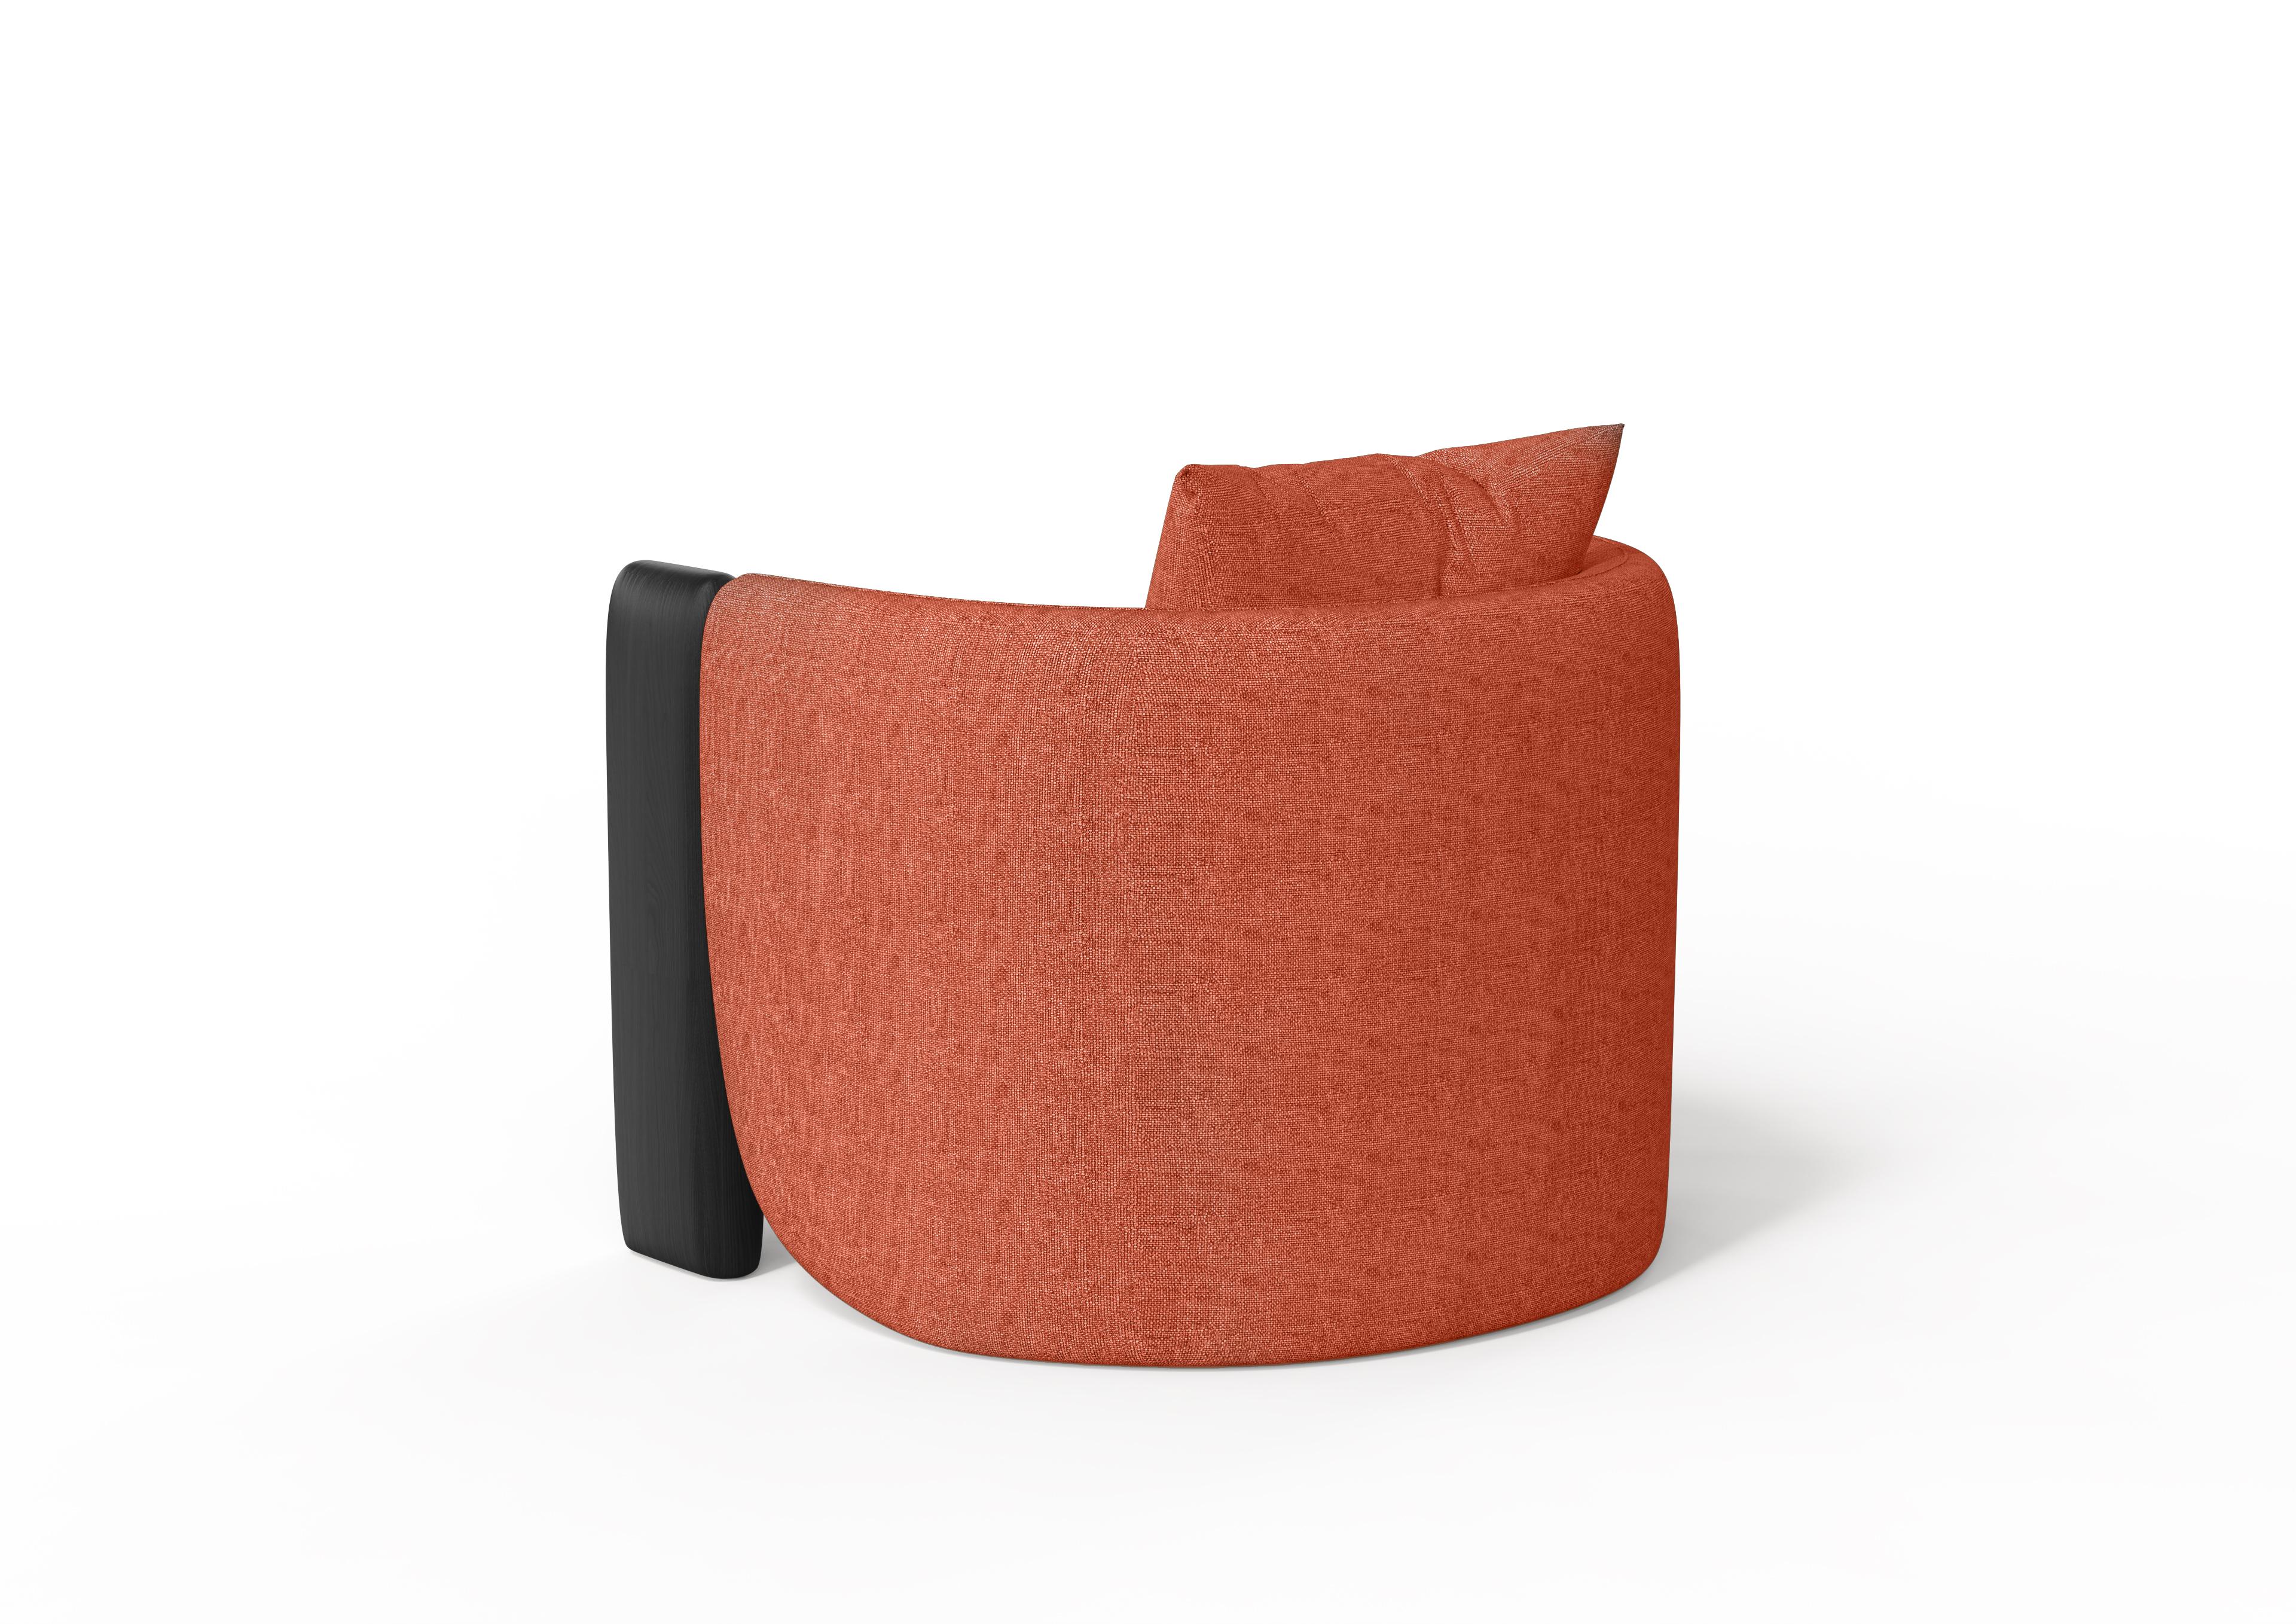 Die unkonventionelle Form des Sunset-Sessels zielt darauf ab, eine Dekoration zu schaffen, eine klare und zarte Linie zwischen der klassischen Wannenstruktur der Sessel und einem organischen und natürlichen Stil. Die gefrästen Massivholzstützen